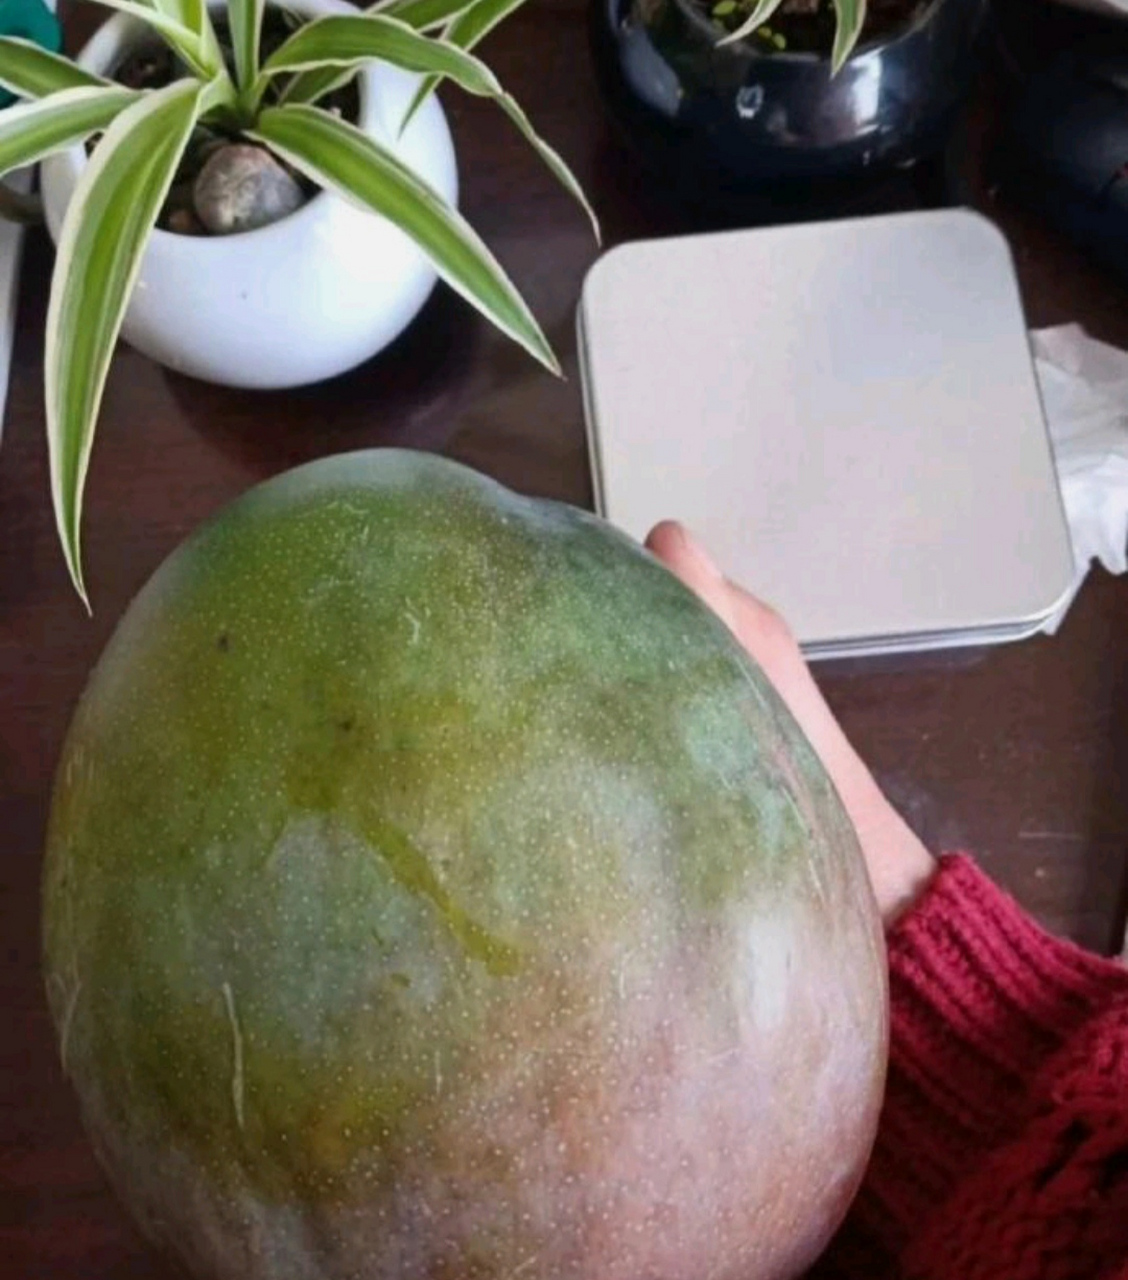 网上买了5斤芒果,商家发来…这是芒瓜吗?